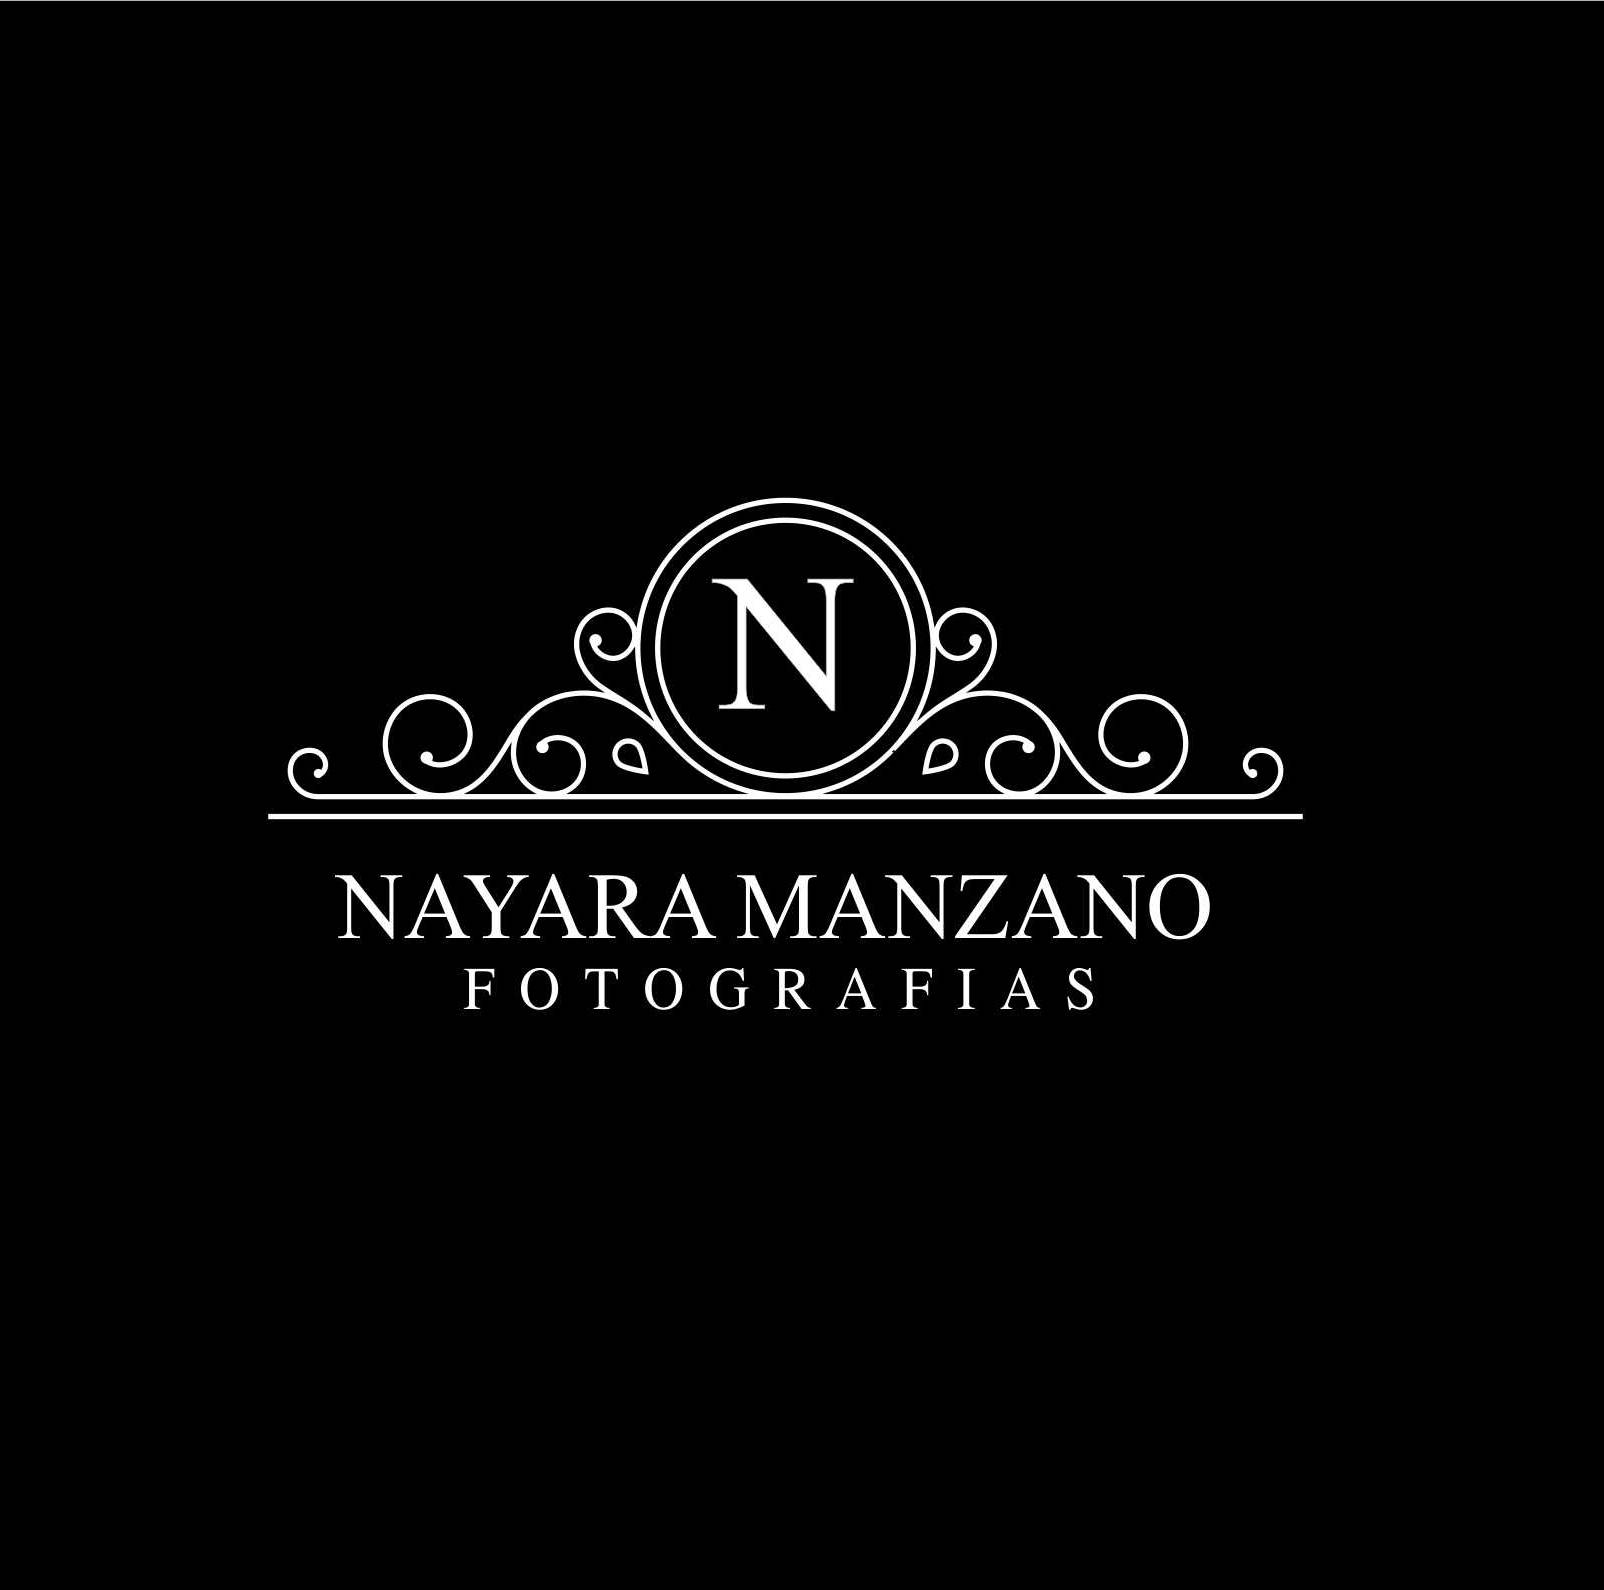 Nayara Manzano Fotografias